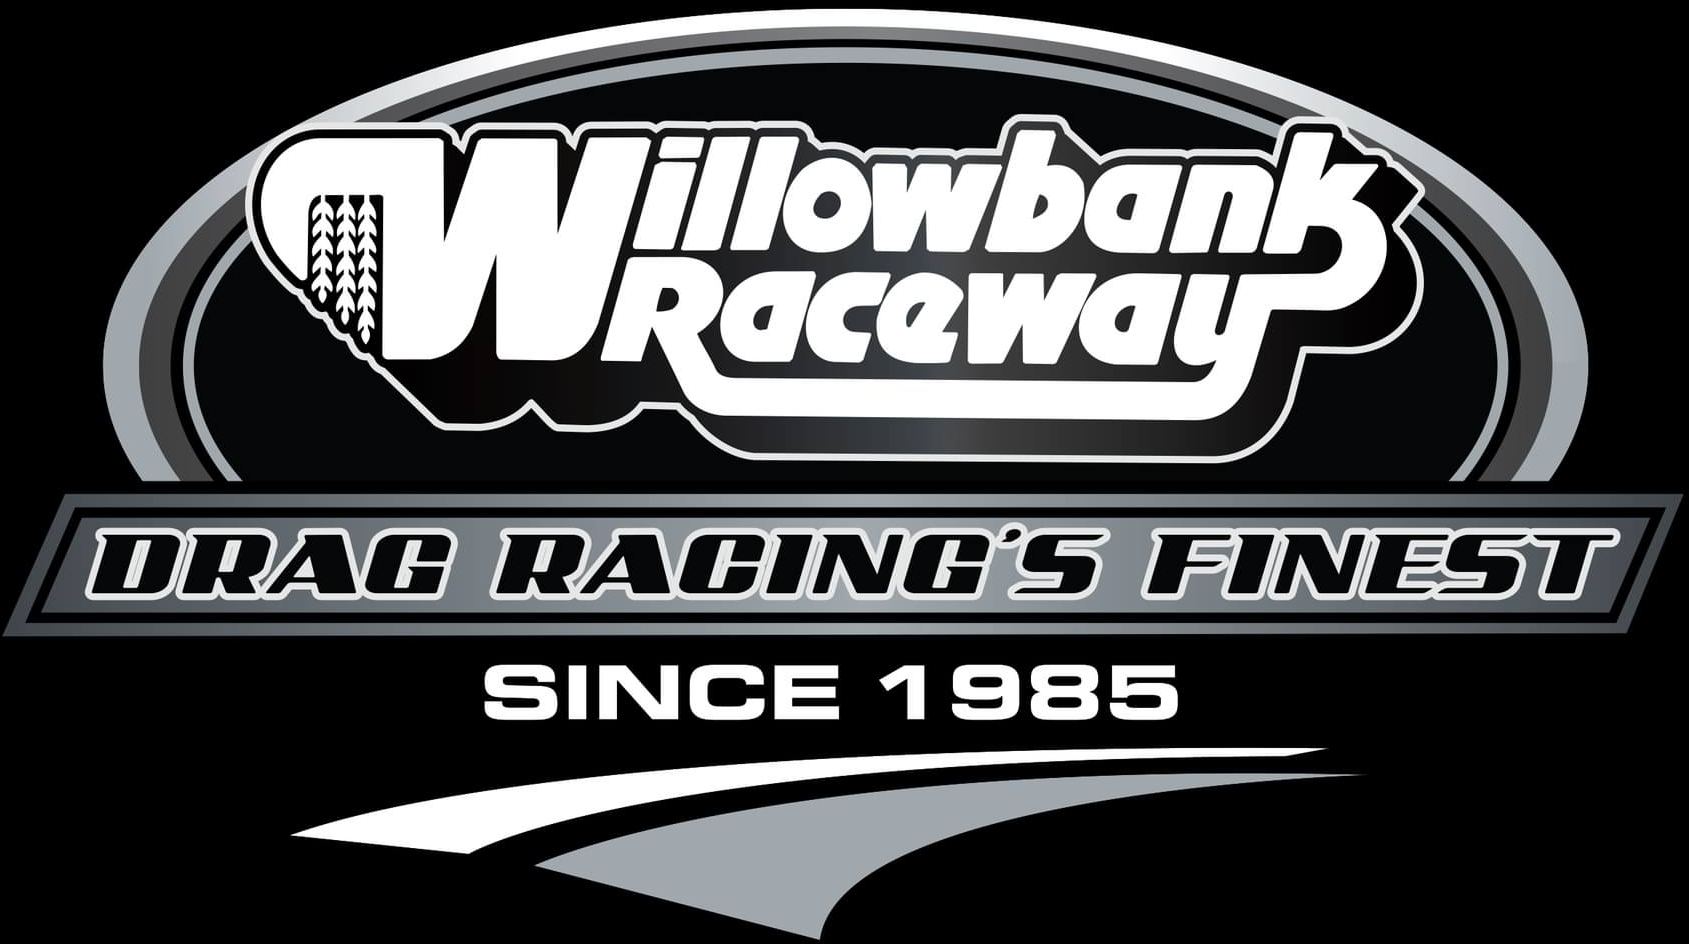 Willowbank Raceway logo